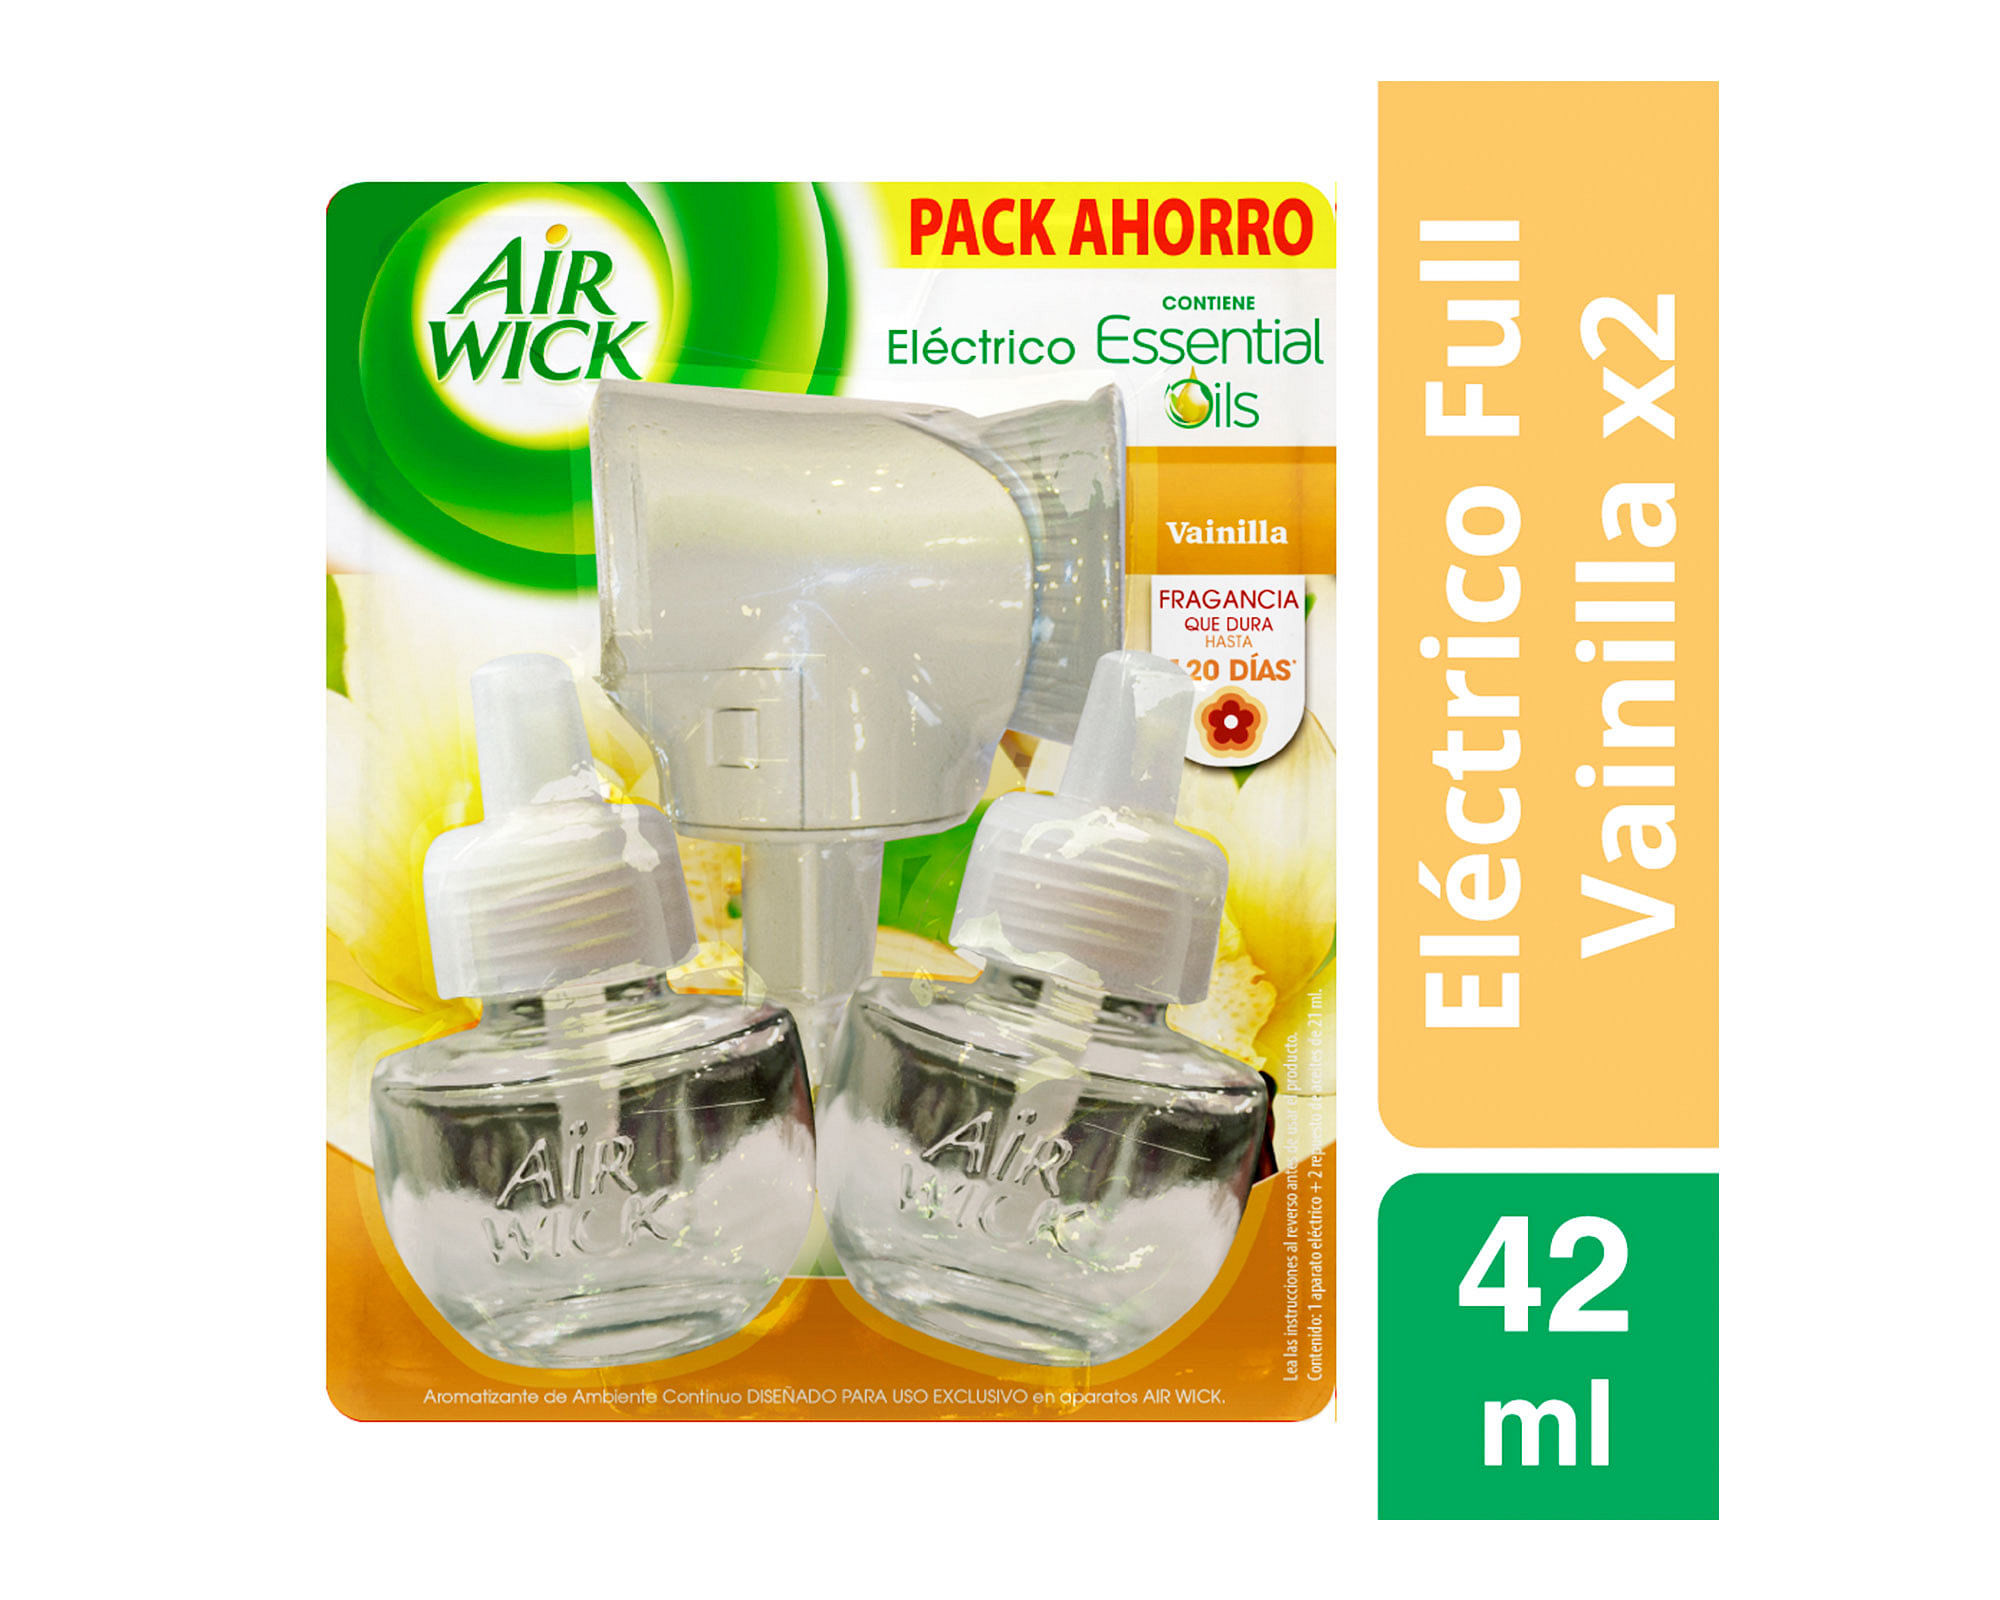 Ambiental Air Wick Eléctrico Super Pack 3 Recargas 21ml